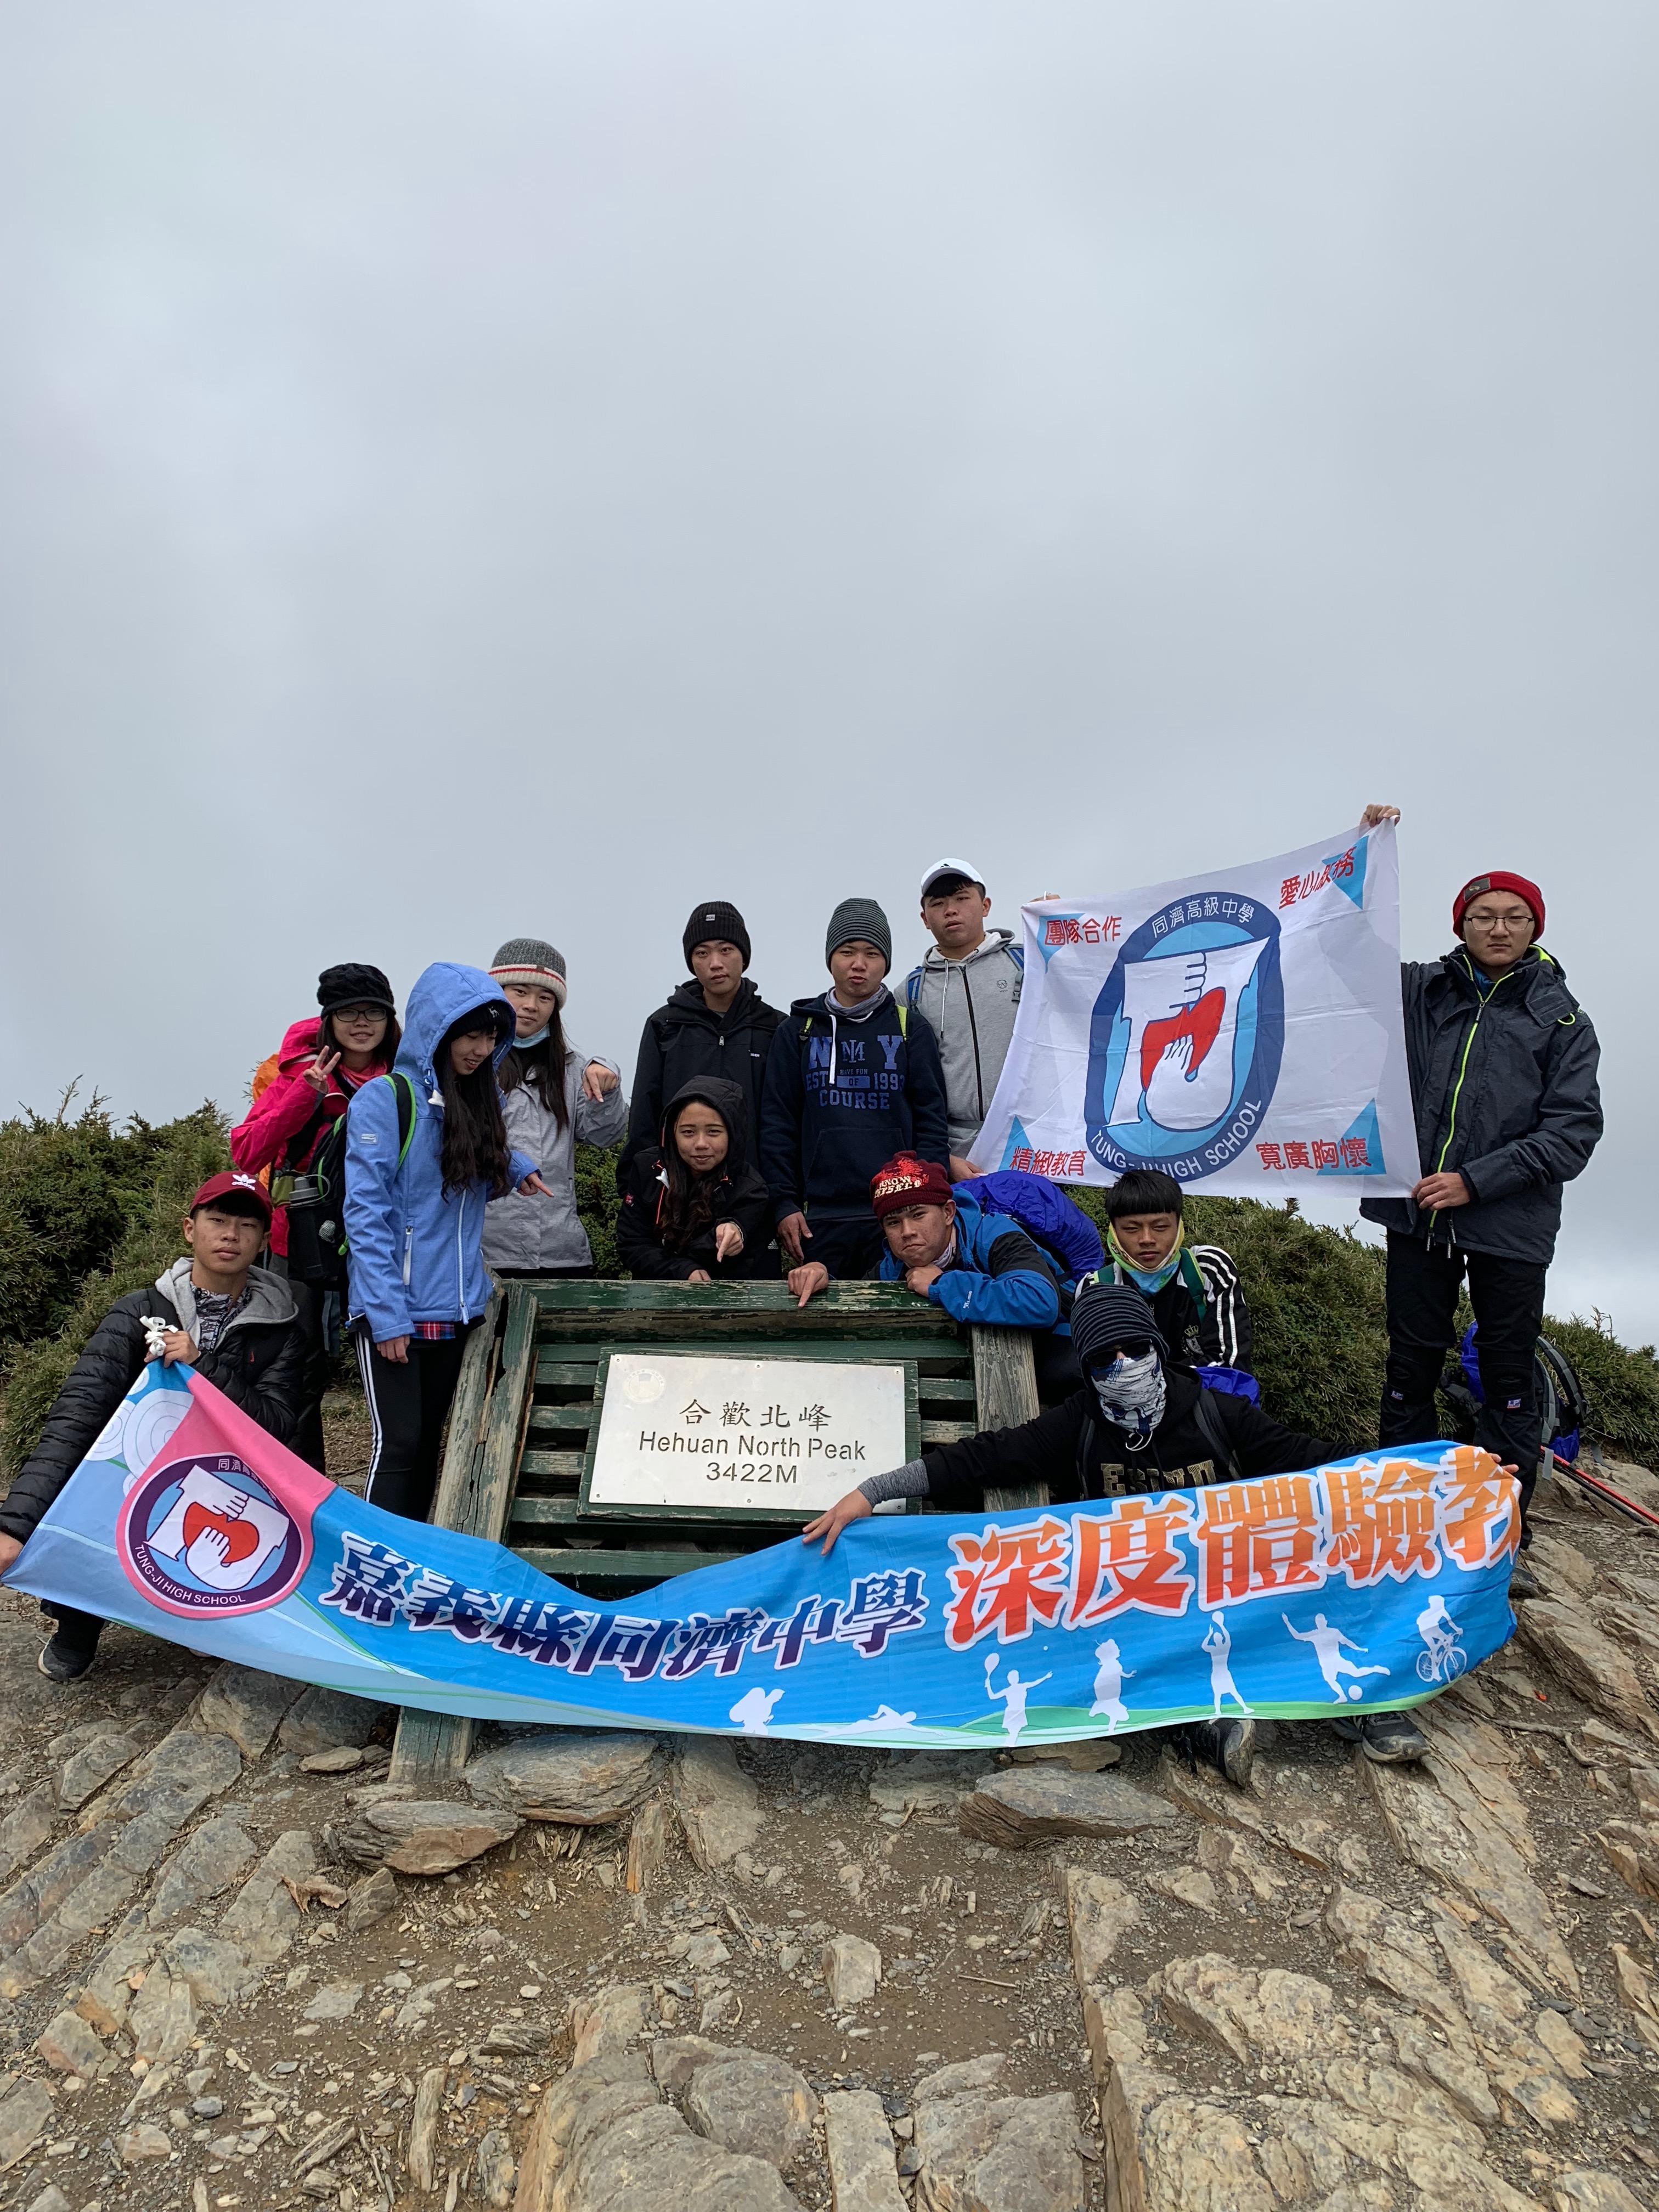 2018 合歡山登頂訓練4